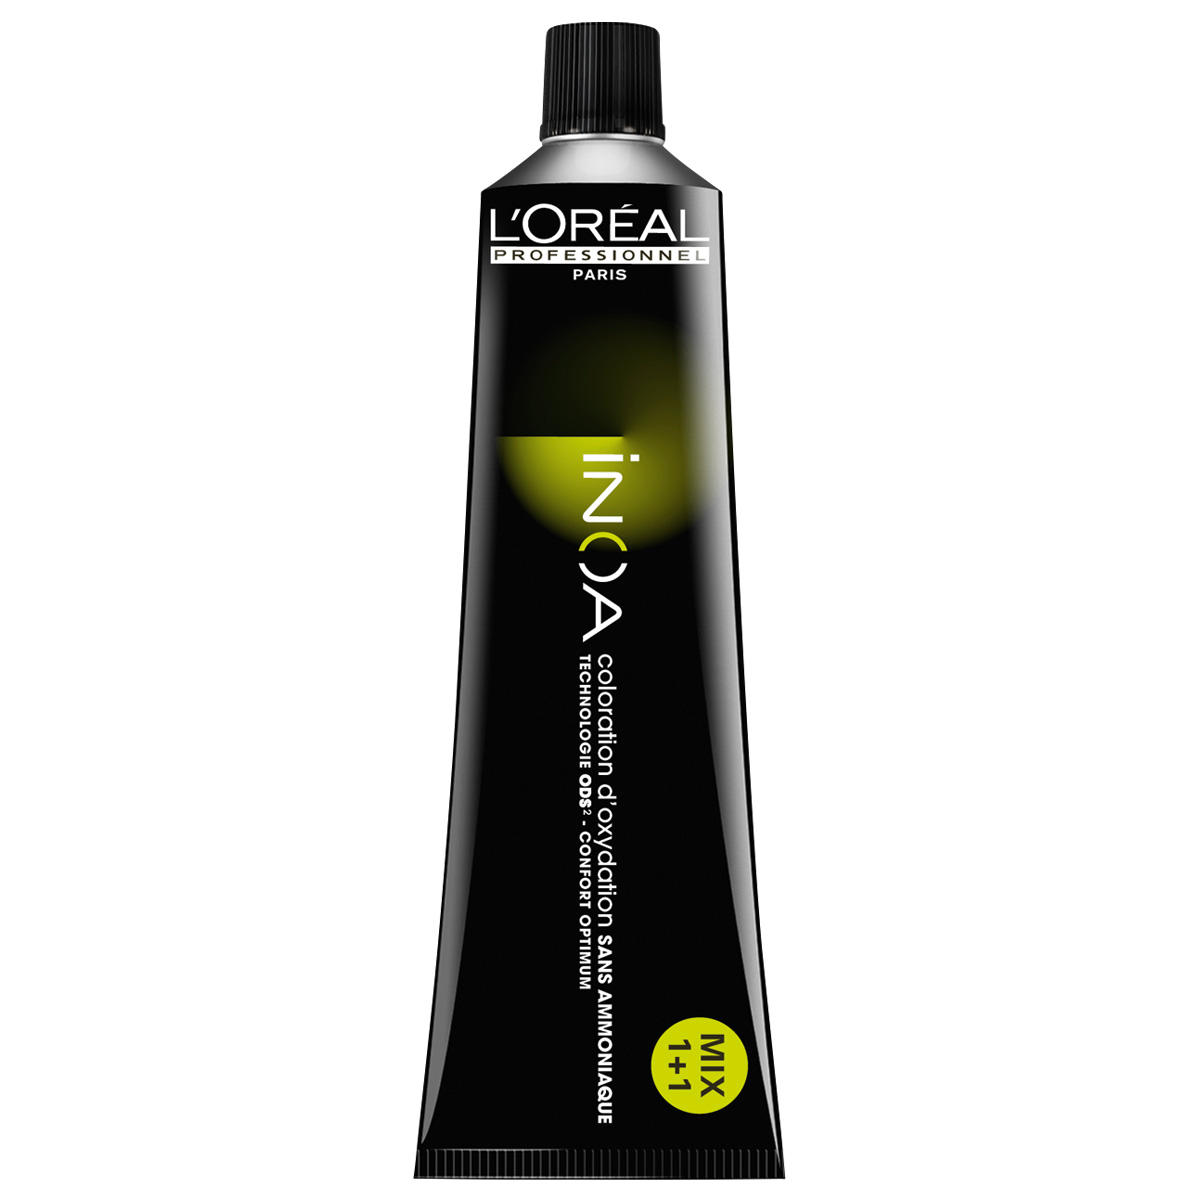 L'Oréal Professionnel Paris Coloration 9.0 Rubio muy claro intensivo, tubo 60 ml - 1